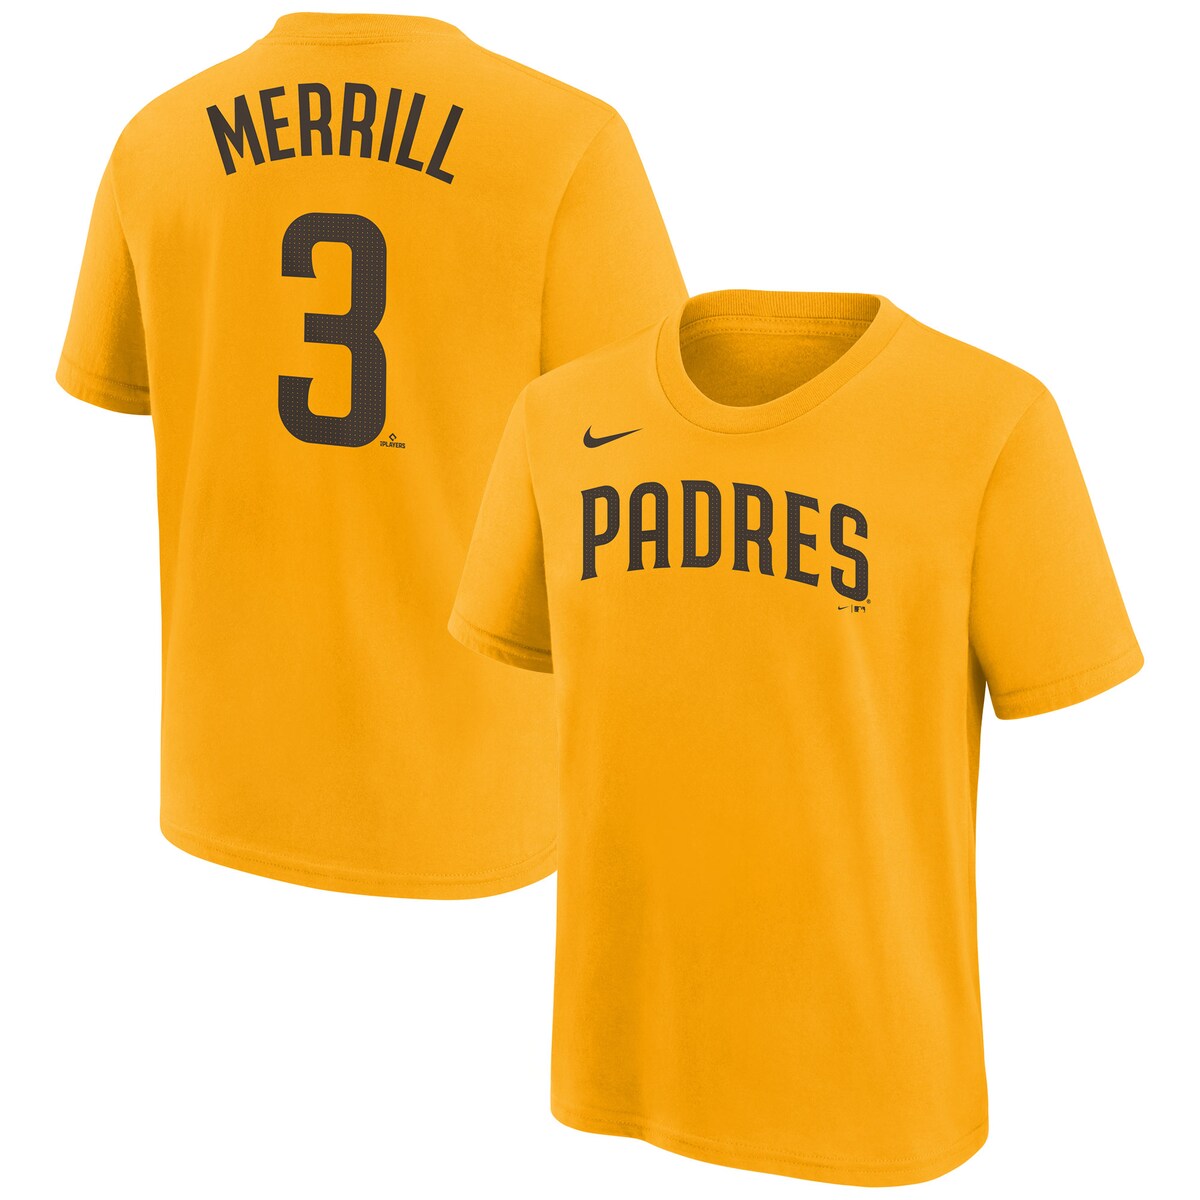 MLB パドレス ジャクソン・メリル ネーム&ナンバー Tシャツ Nike ナイキ キッズ ゴールド (Youth Nike N&N Tees - Merrill)